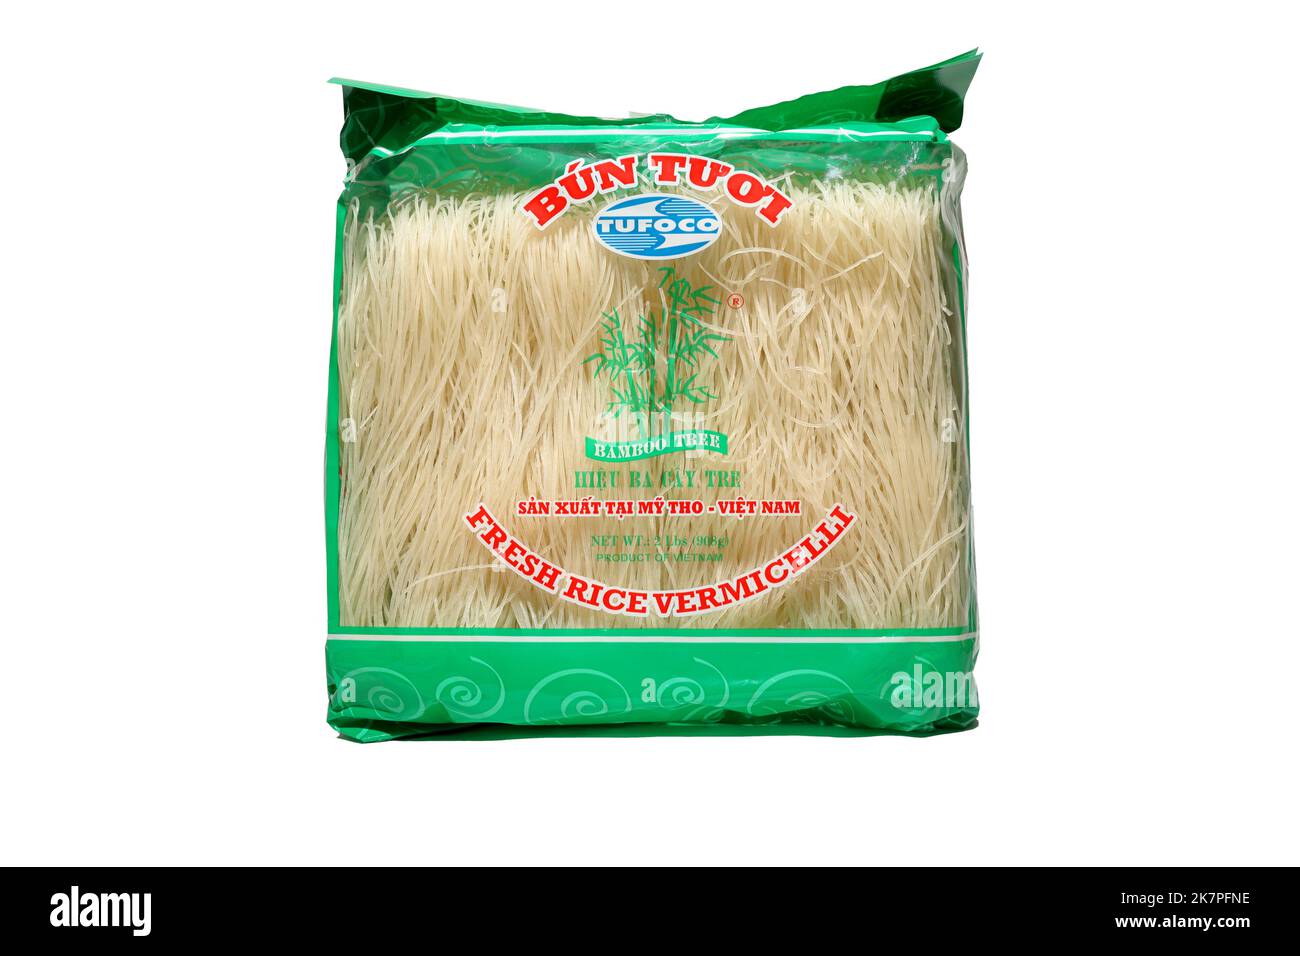 Un paquet de 2lb de vermicelles de riz frais de marque Tufoco Bamboo Tree Bún Tươi est isolé sur un fond blanc. image découpée pour illustration et éditorial. Banque D'Images